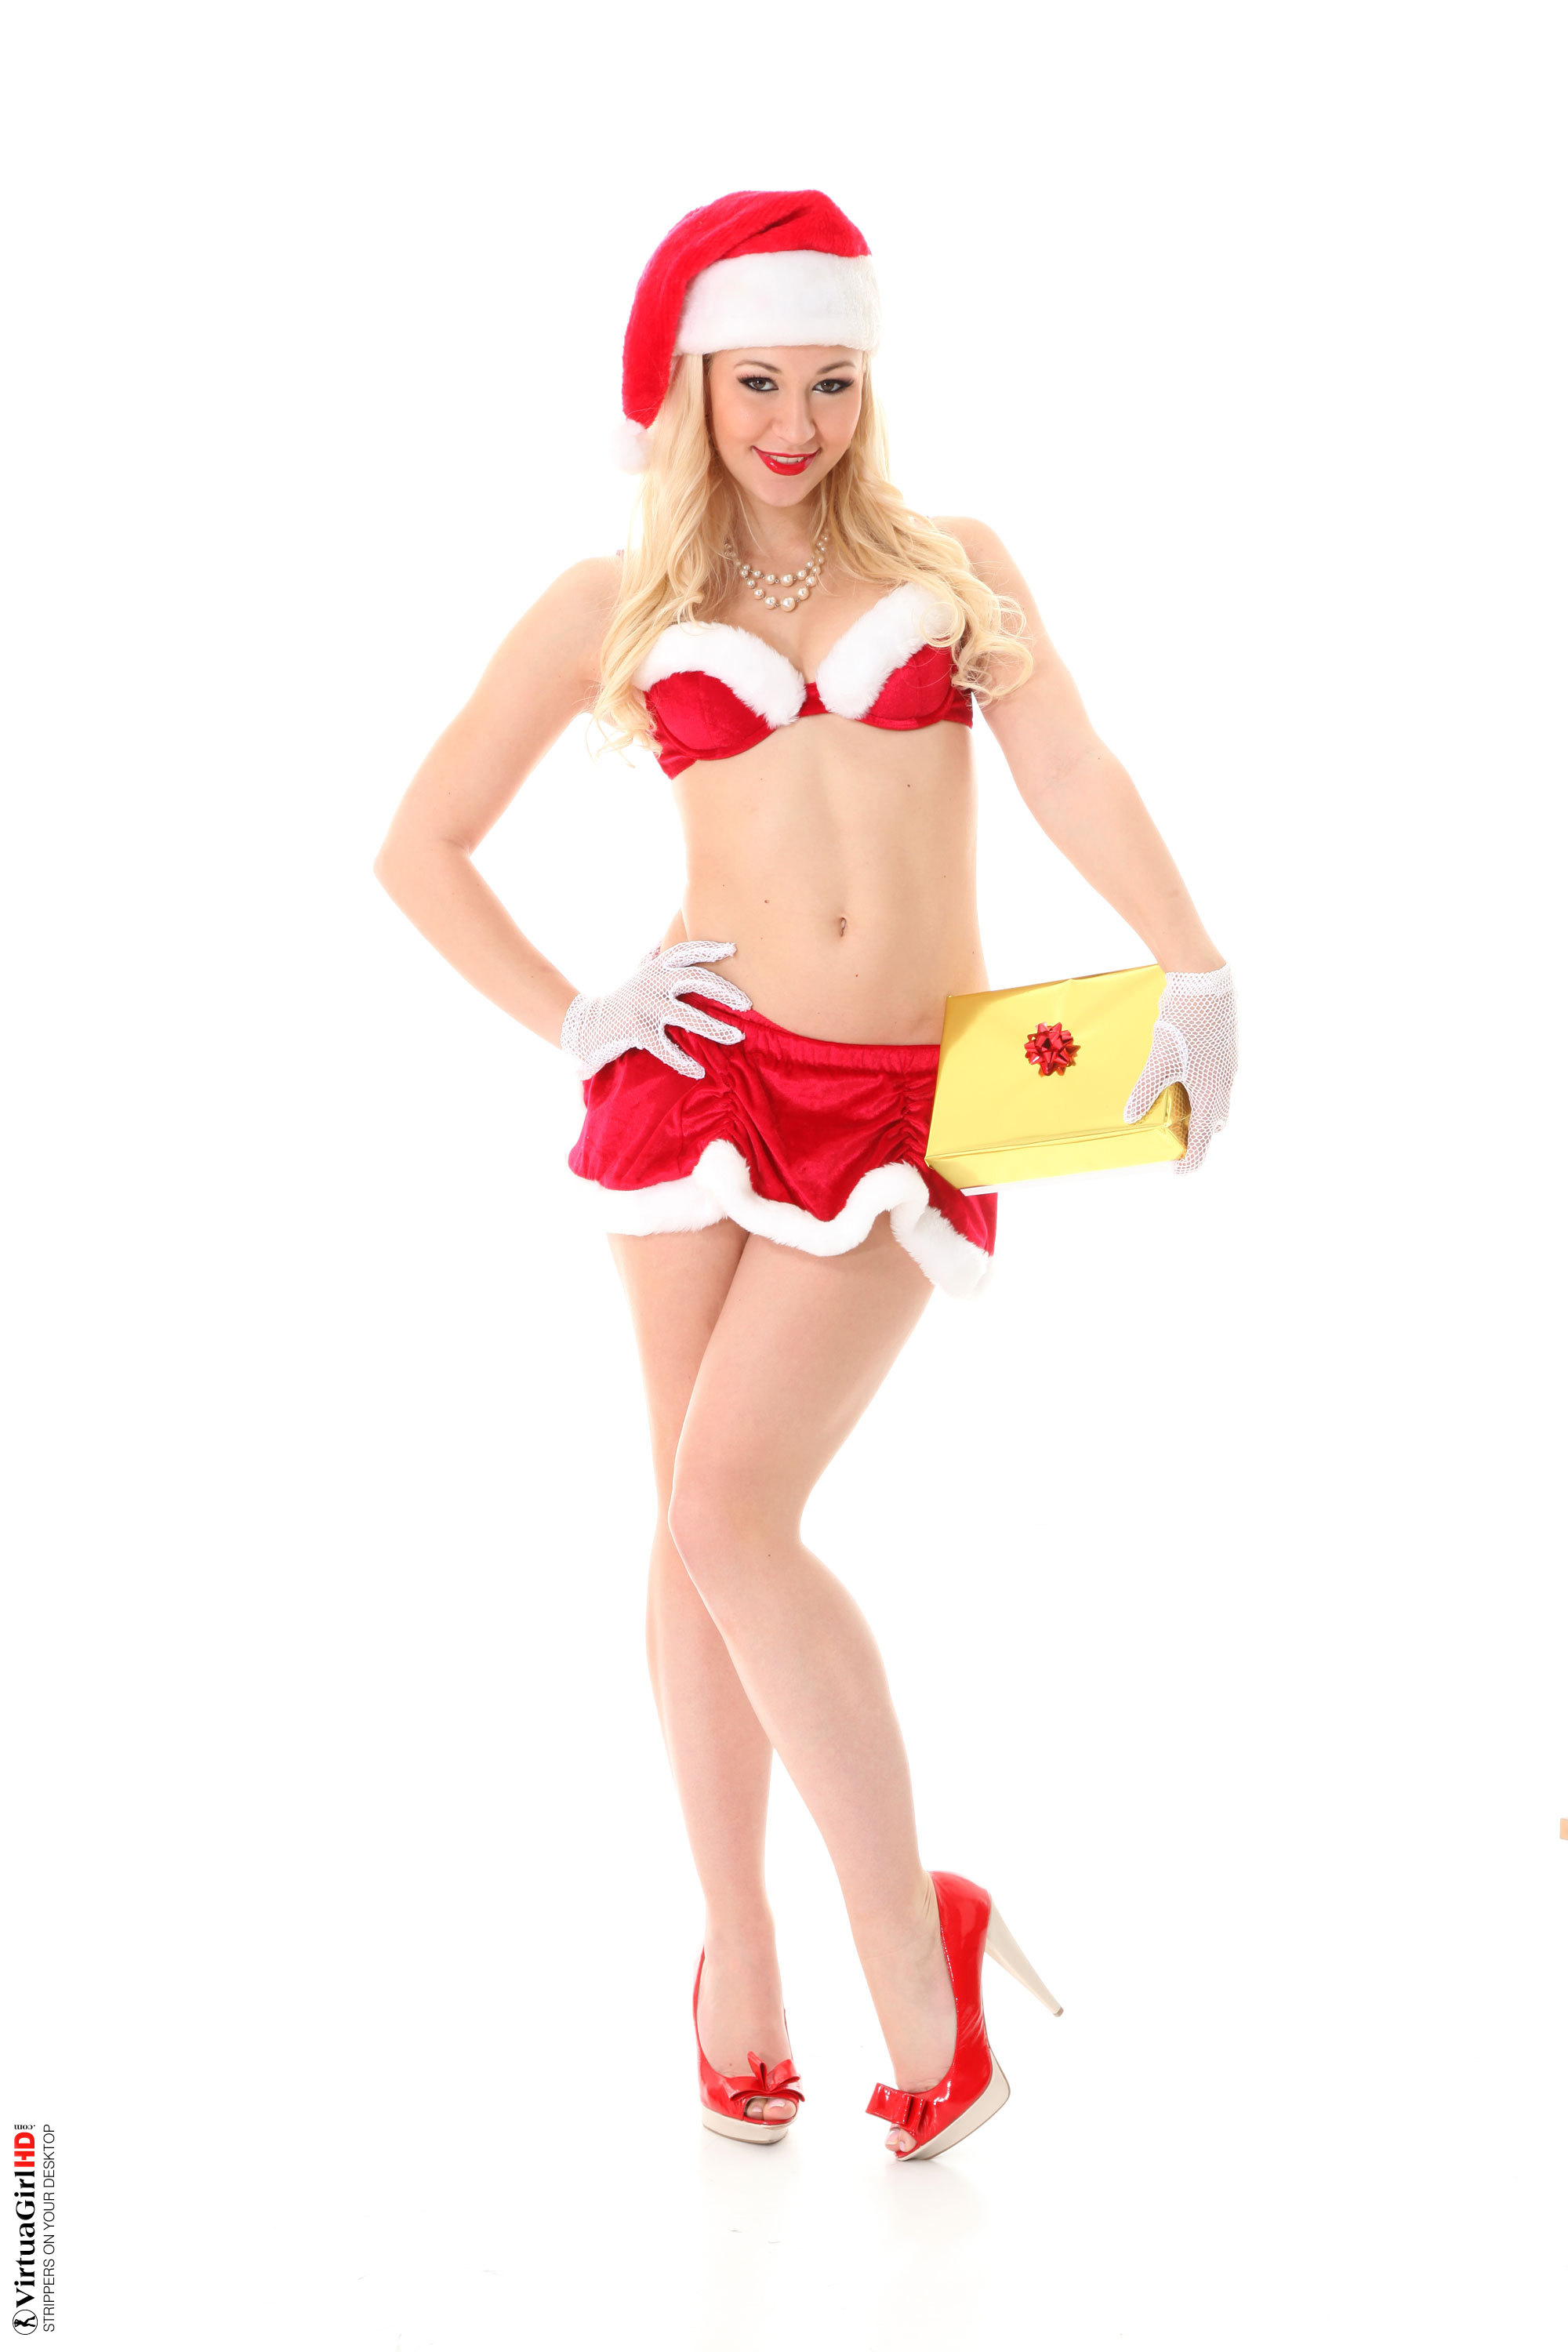 VirtuaGirl, blonde, strip, nude, perky, Christmas